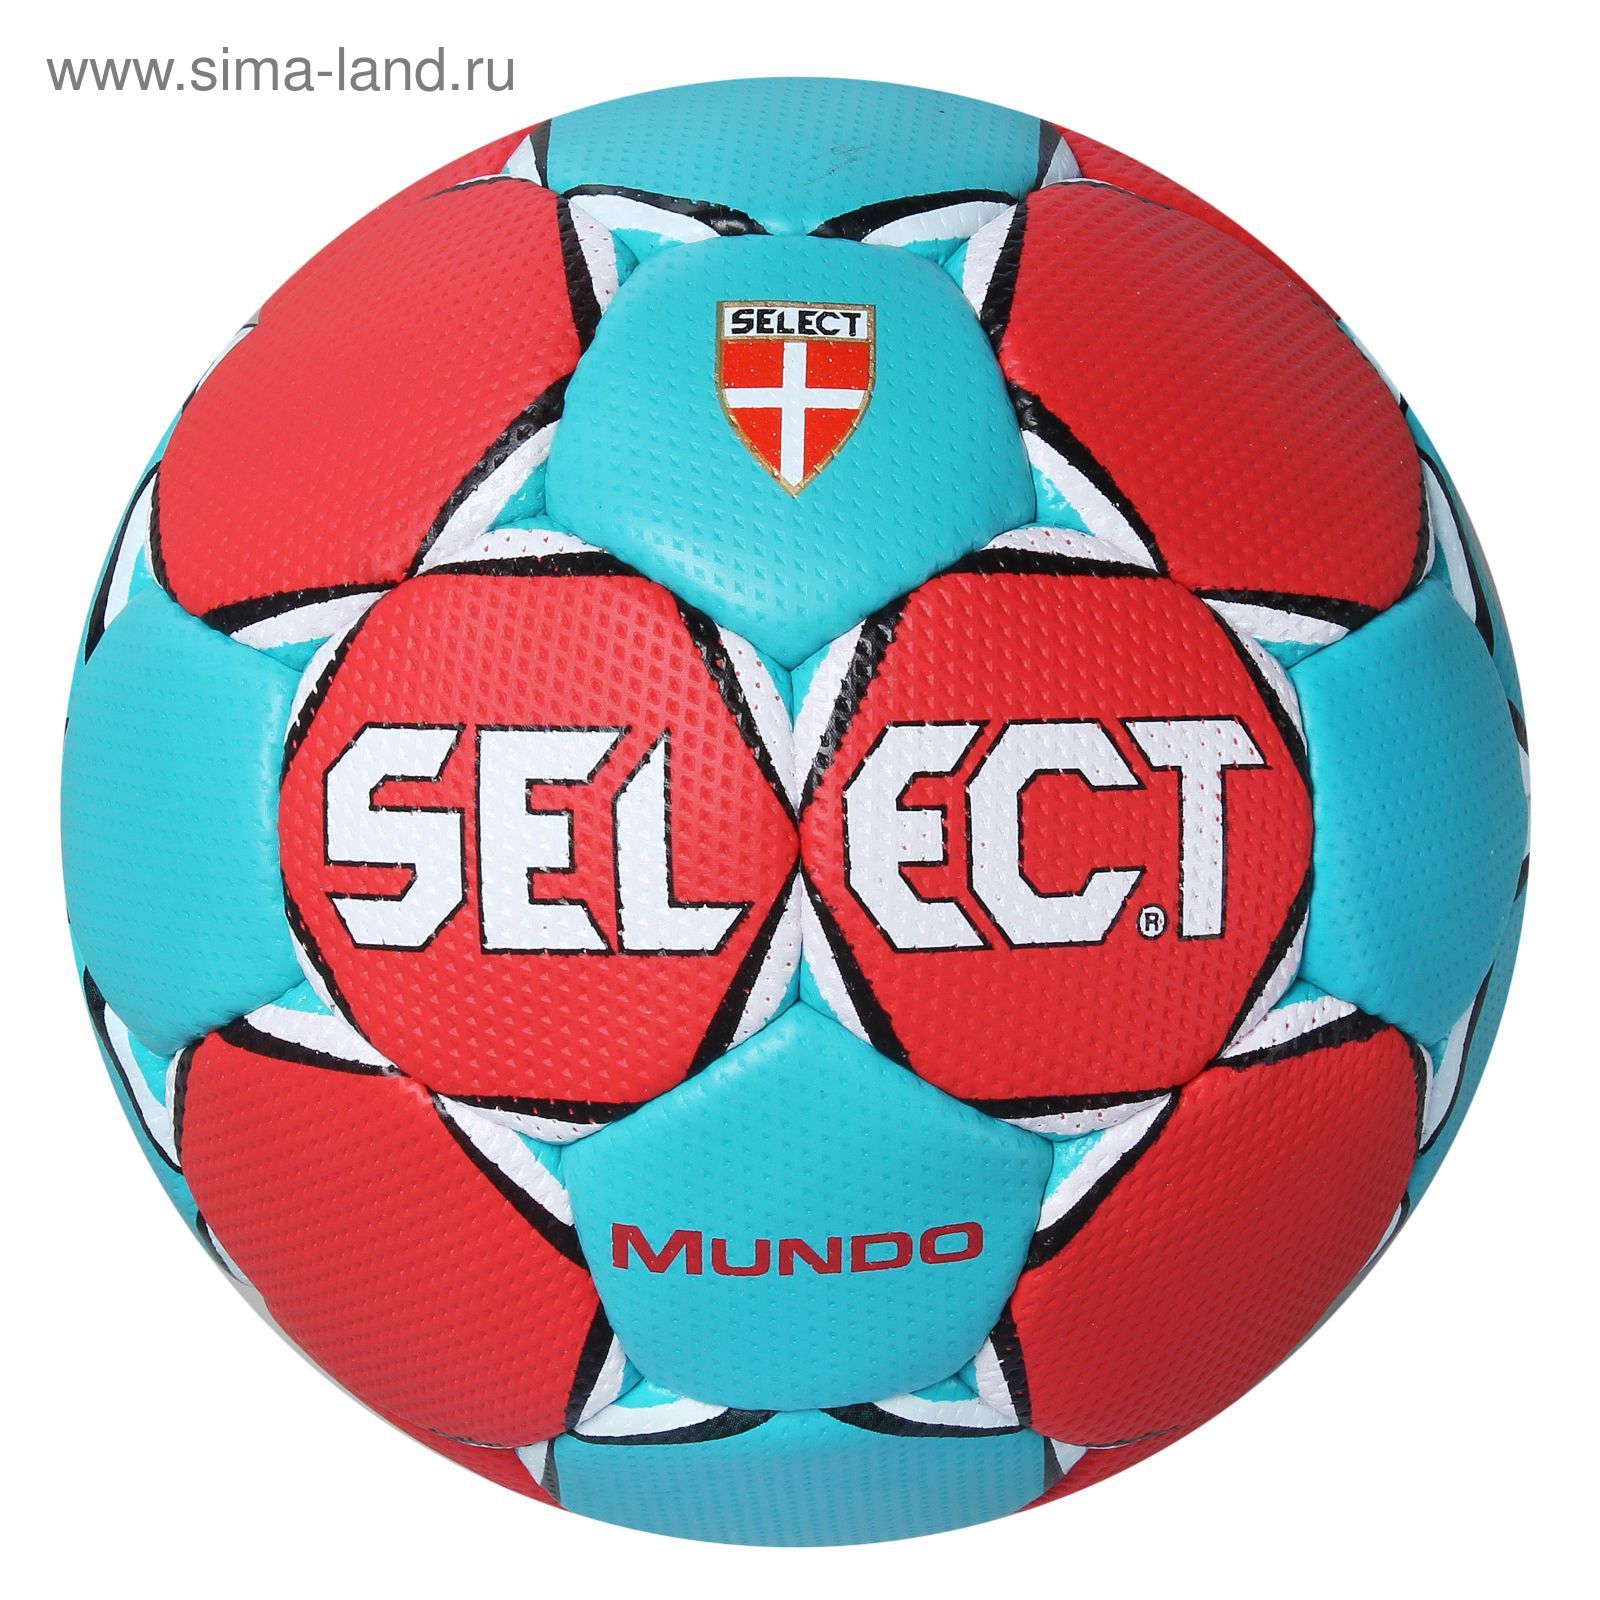 Мяч гандбольный Select Mundo, 846211-323 Senior, размер 3